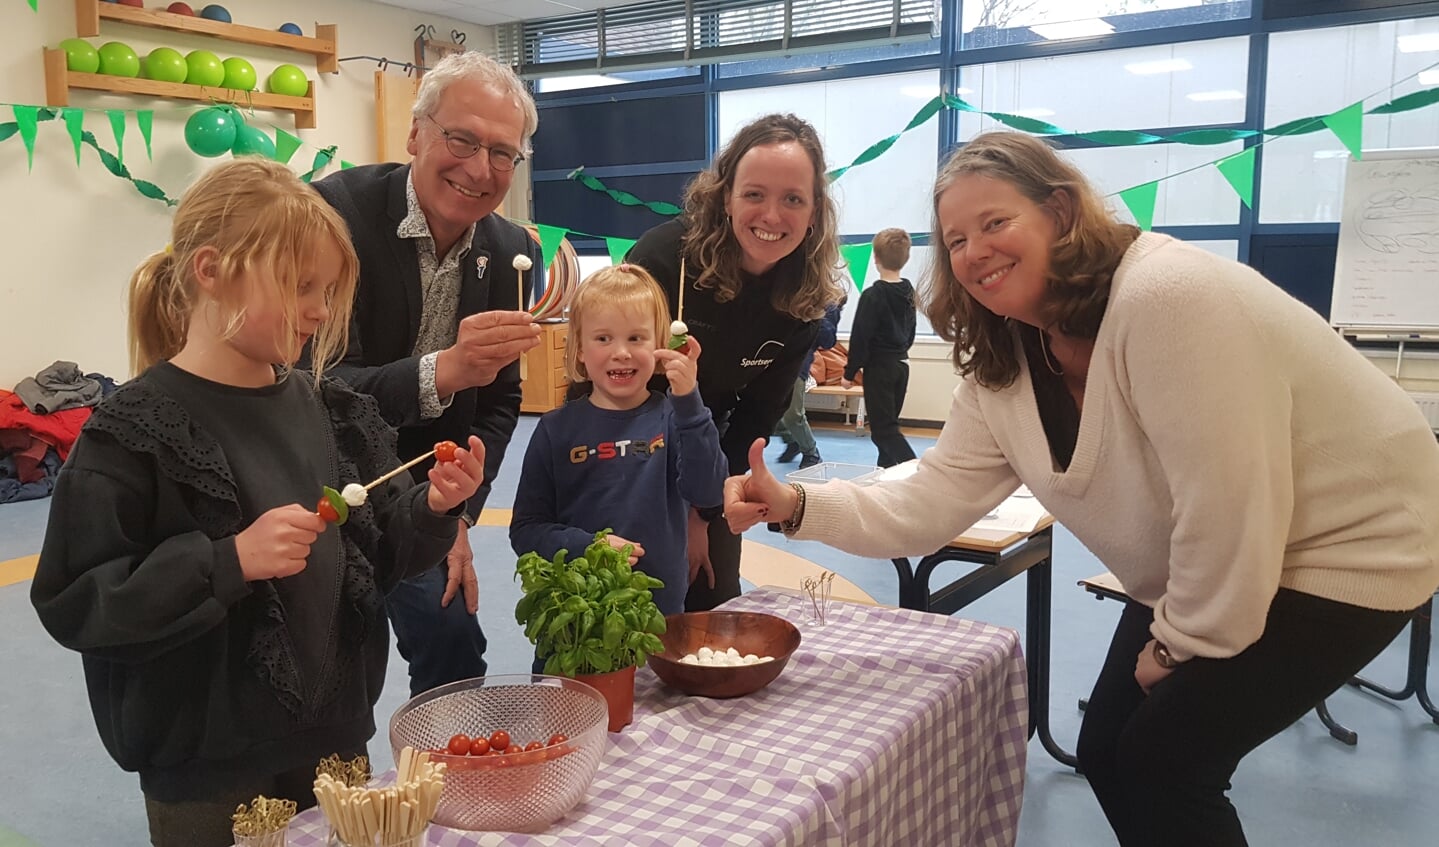 Victoire van Groente & Meer maakte samen met de bezoekers een gezonde snack